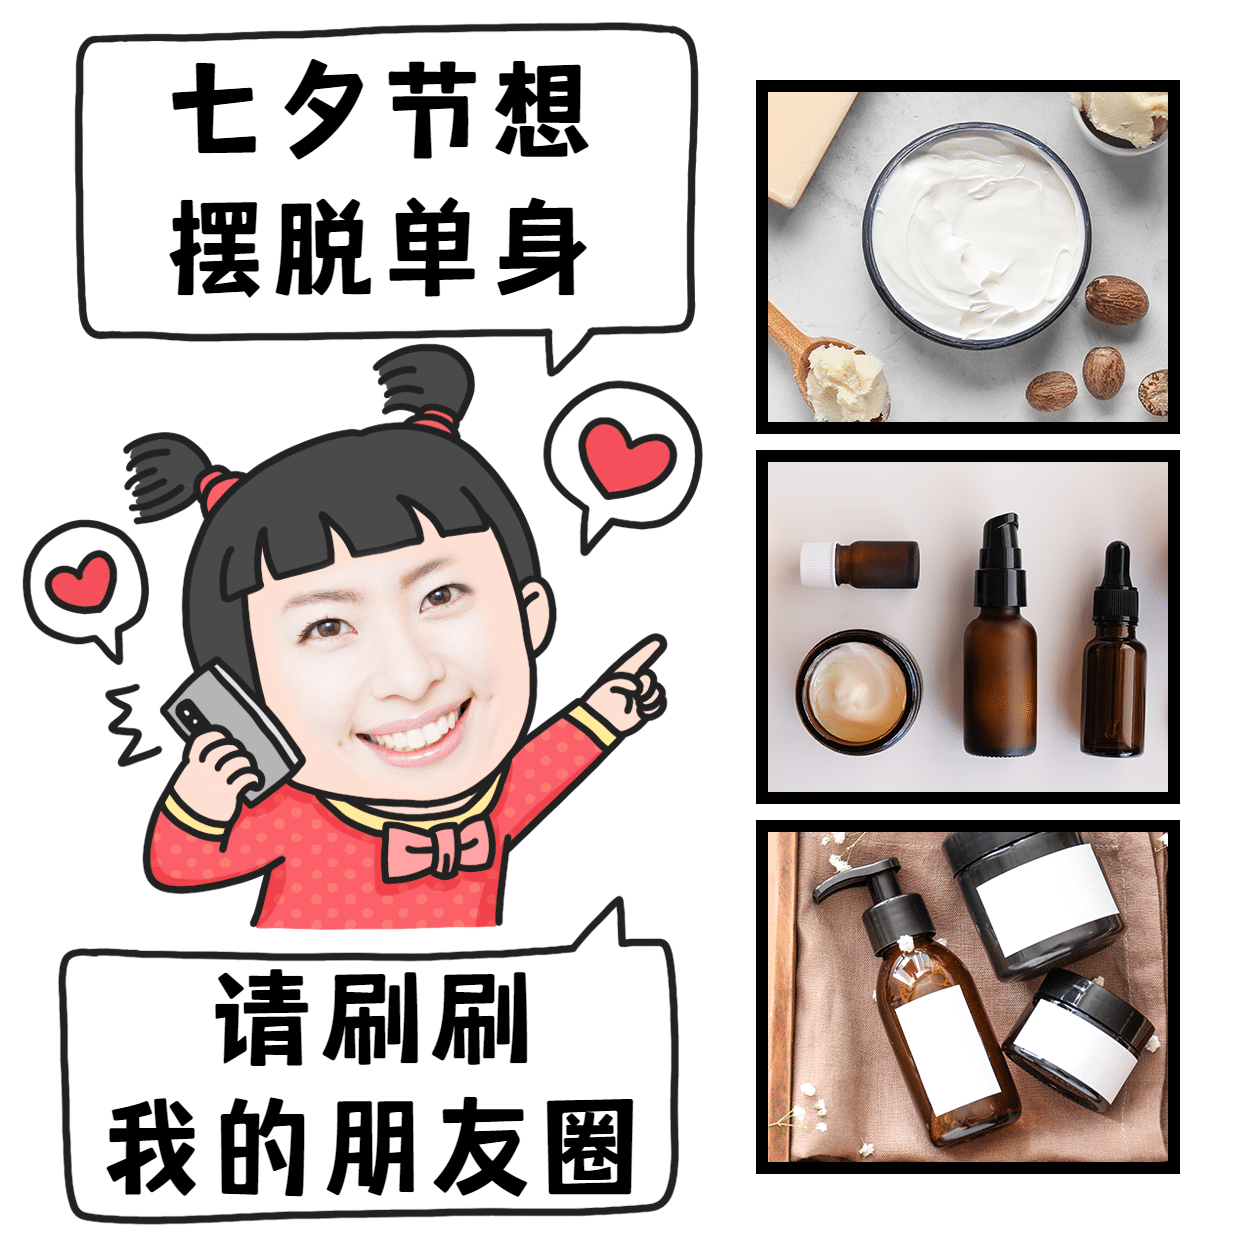 七夕营销表情包趣味晒产品手绘爱心